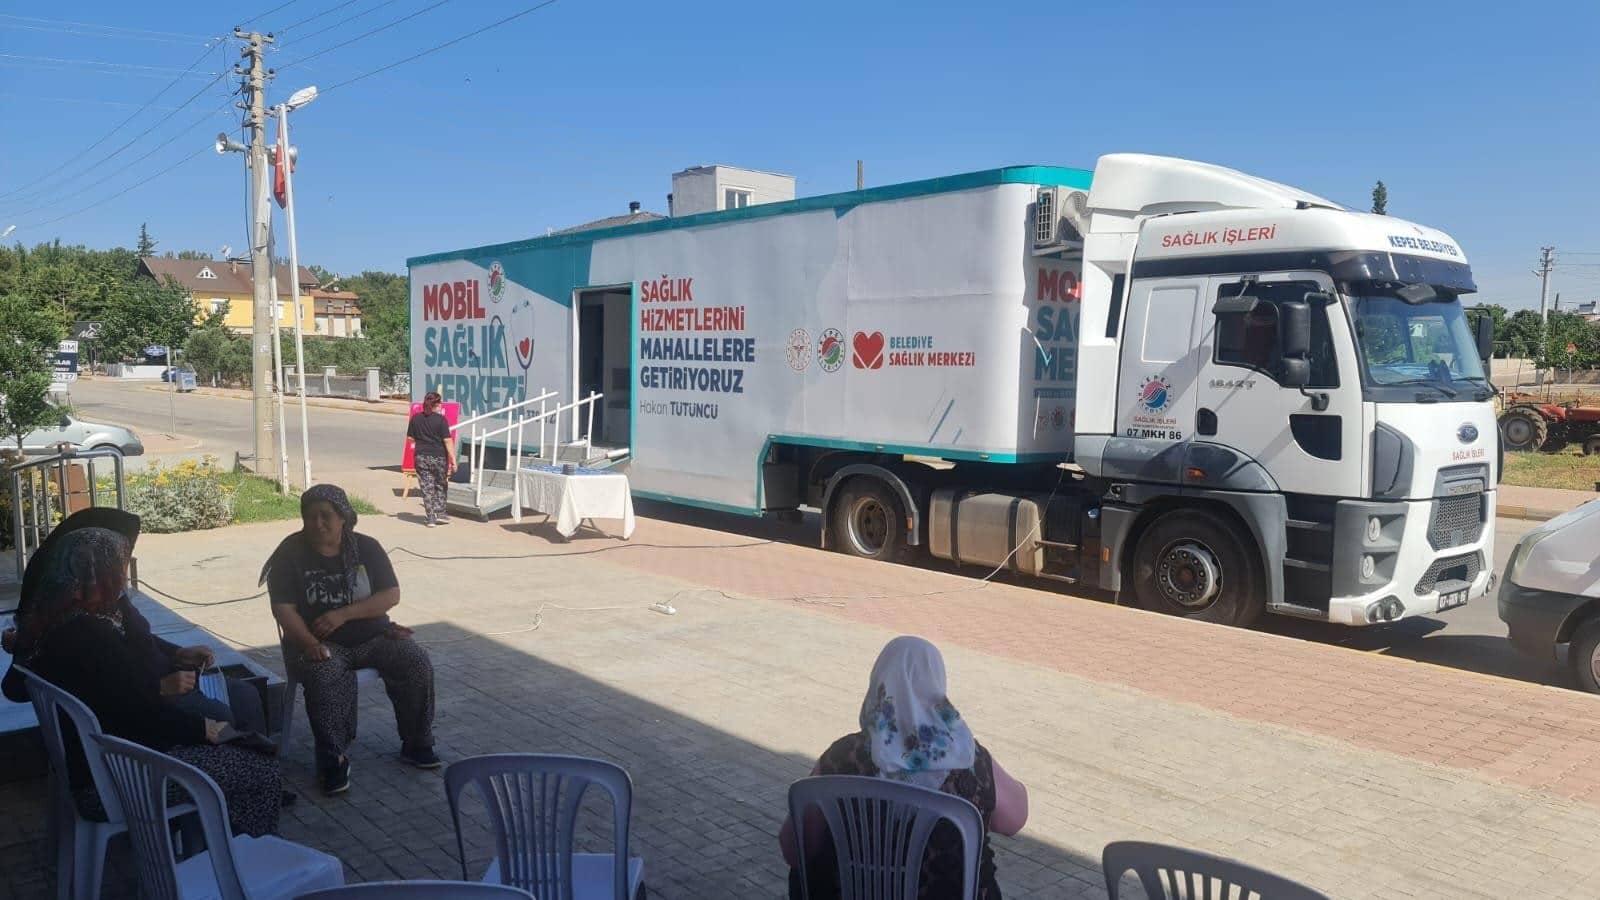 kepez'e ait mobil sağlık merkezi i̇lçeleri geziyor